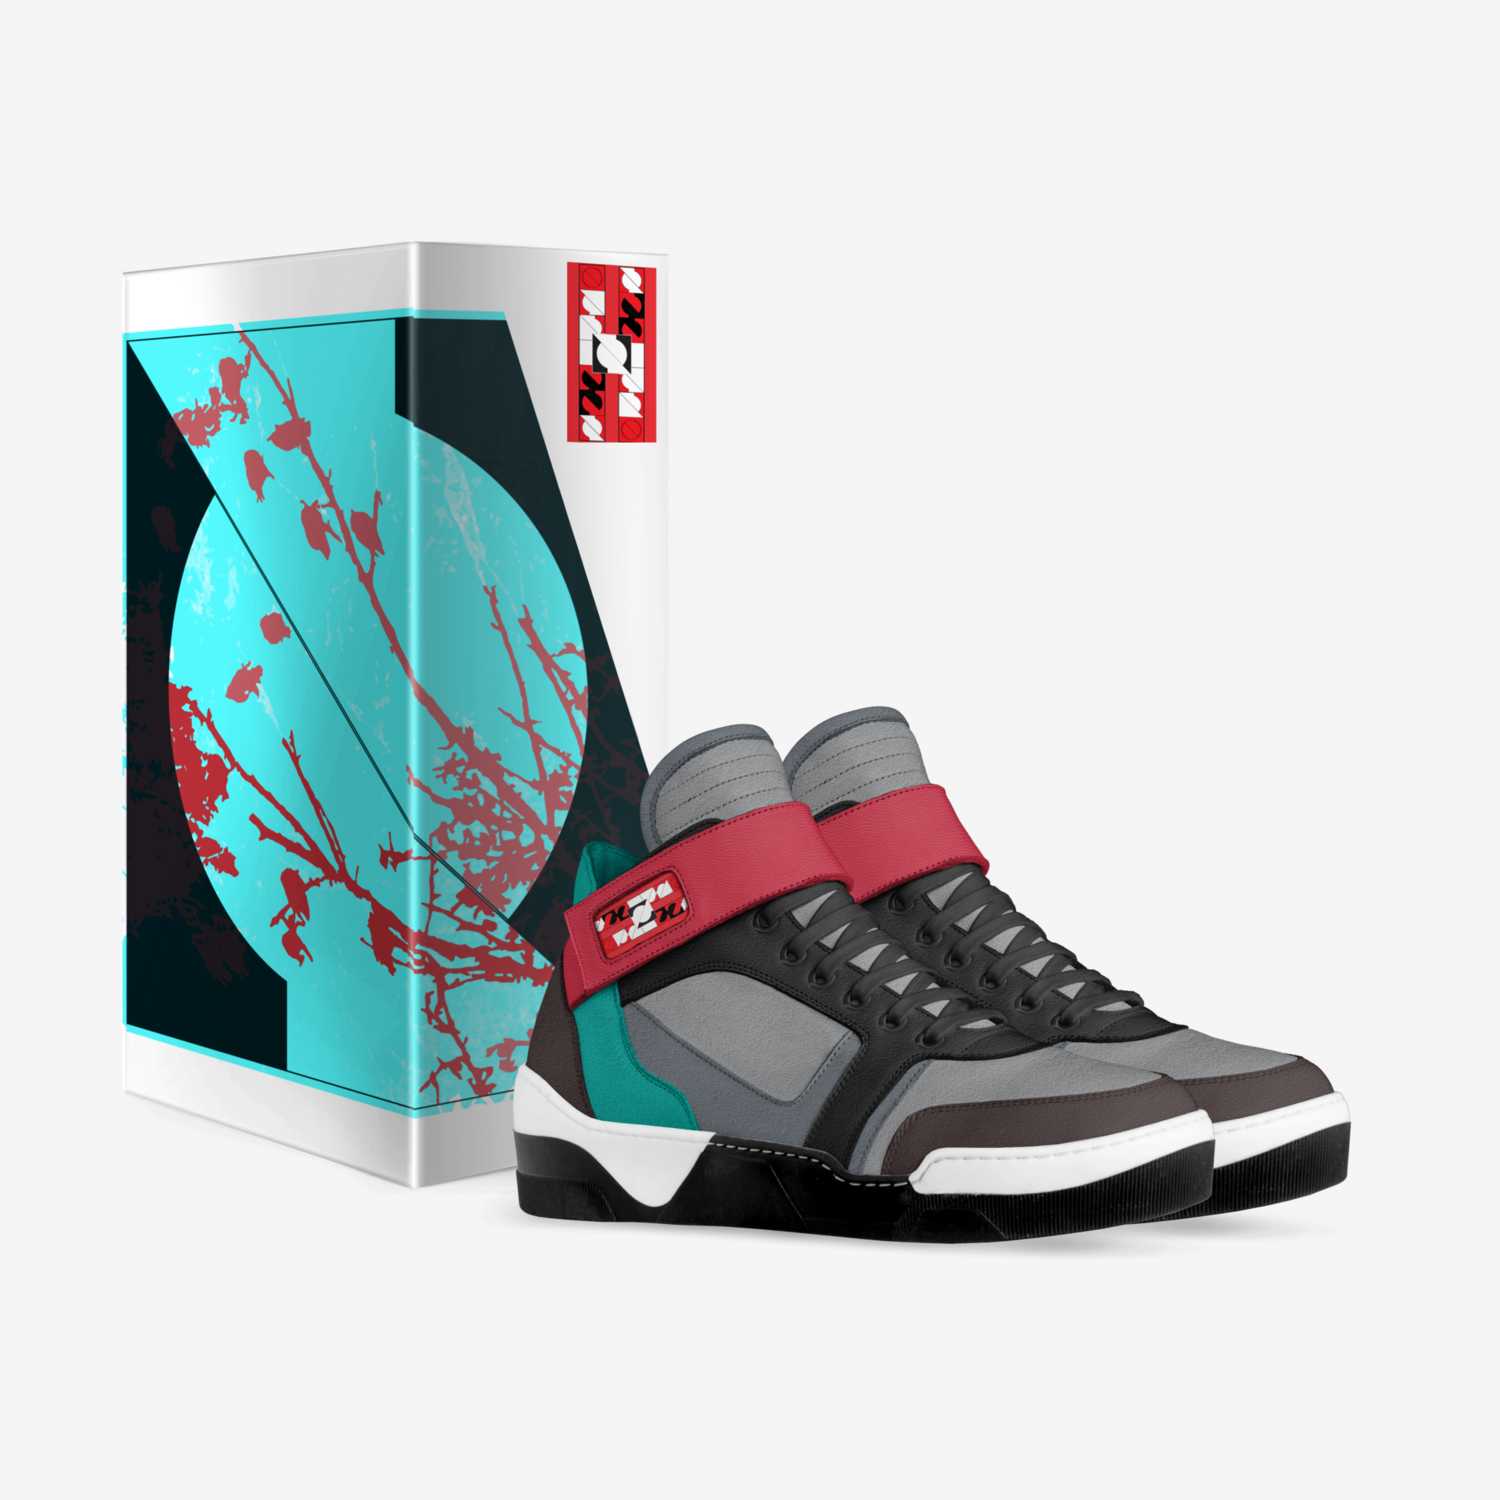 ZECULTO custom made in Italy shoes by Zeculto Oppenheimer | Box view